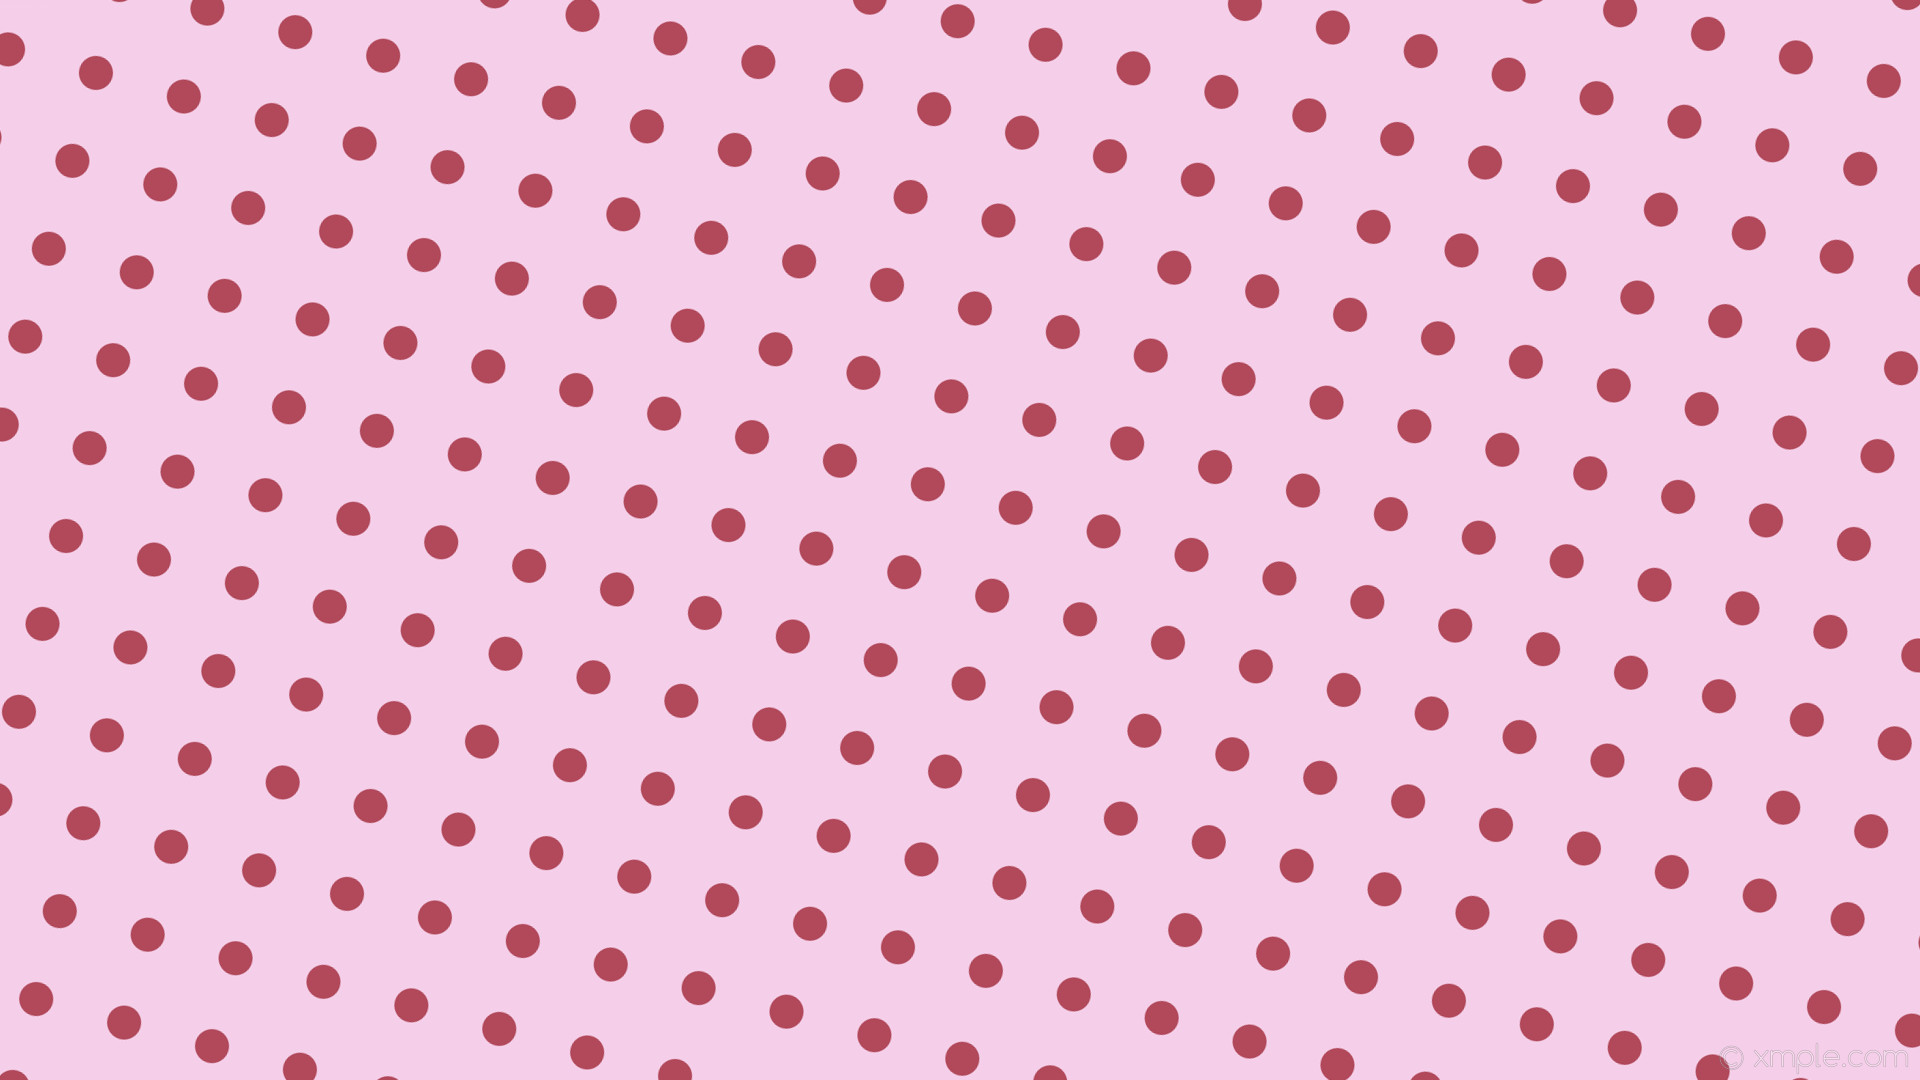 1920x1080 wallpaper red spots pink polka dots light pink #f5cfe9 #b1495b 255Â° 34px  91px